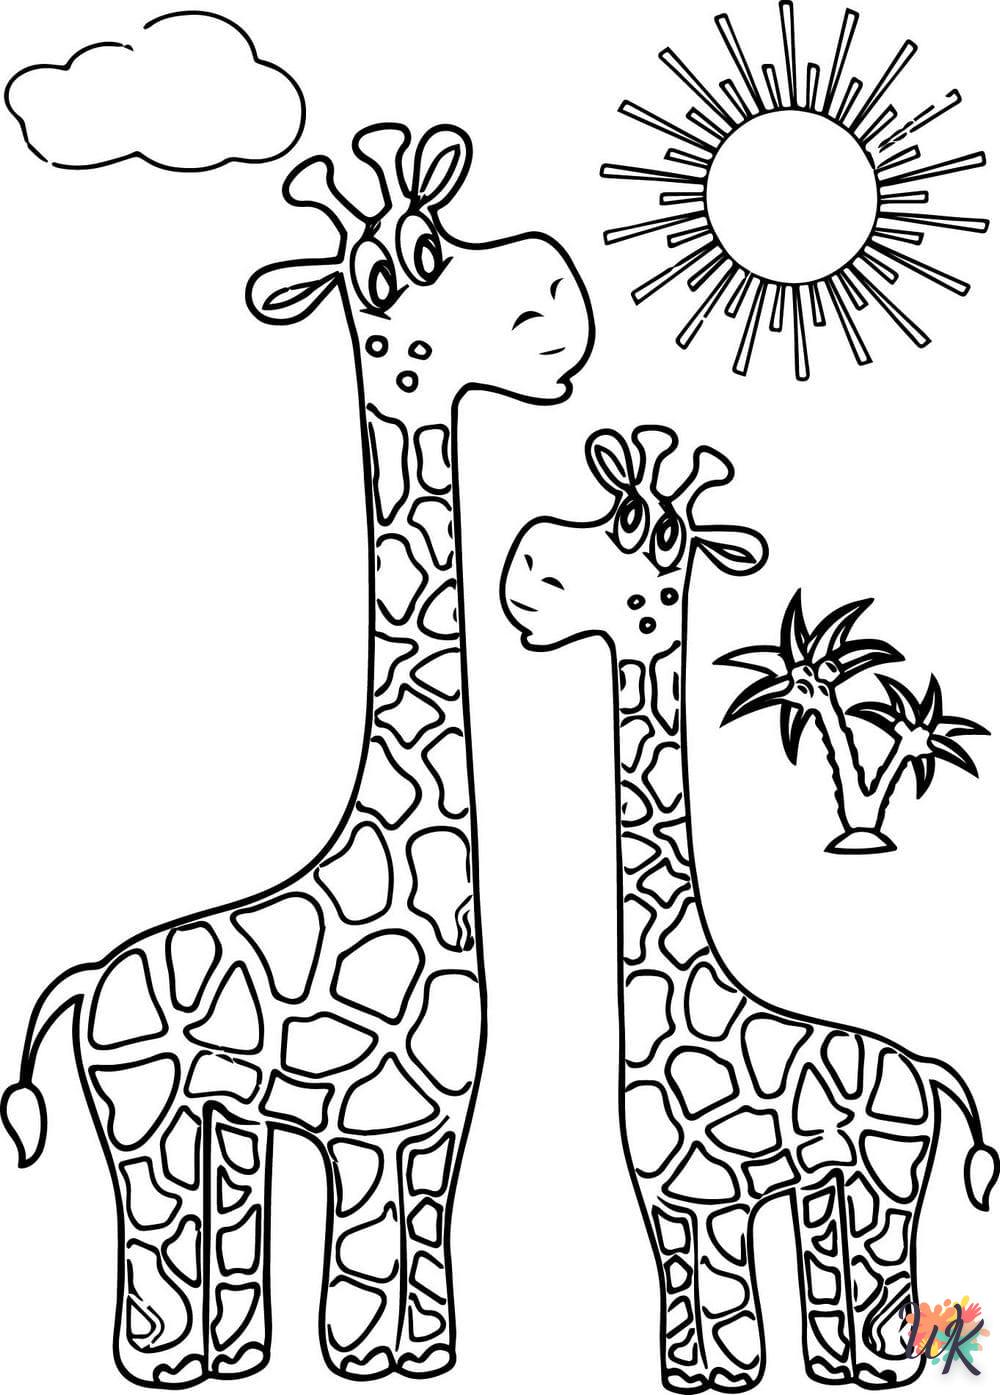 Giraffe kleurplaten20